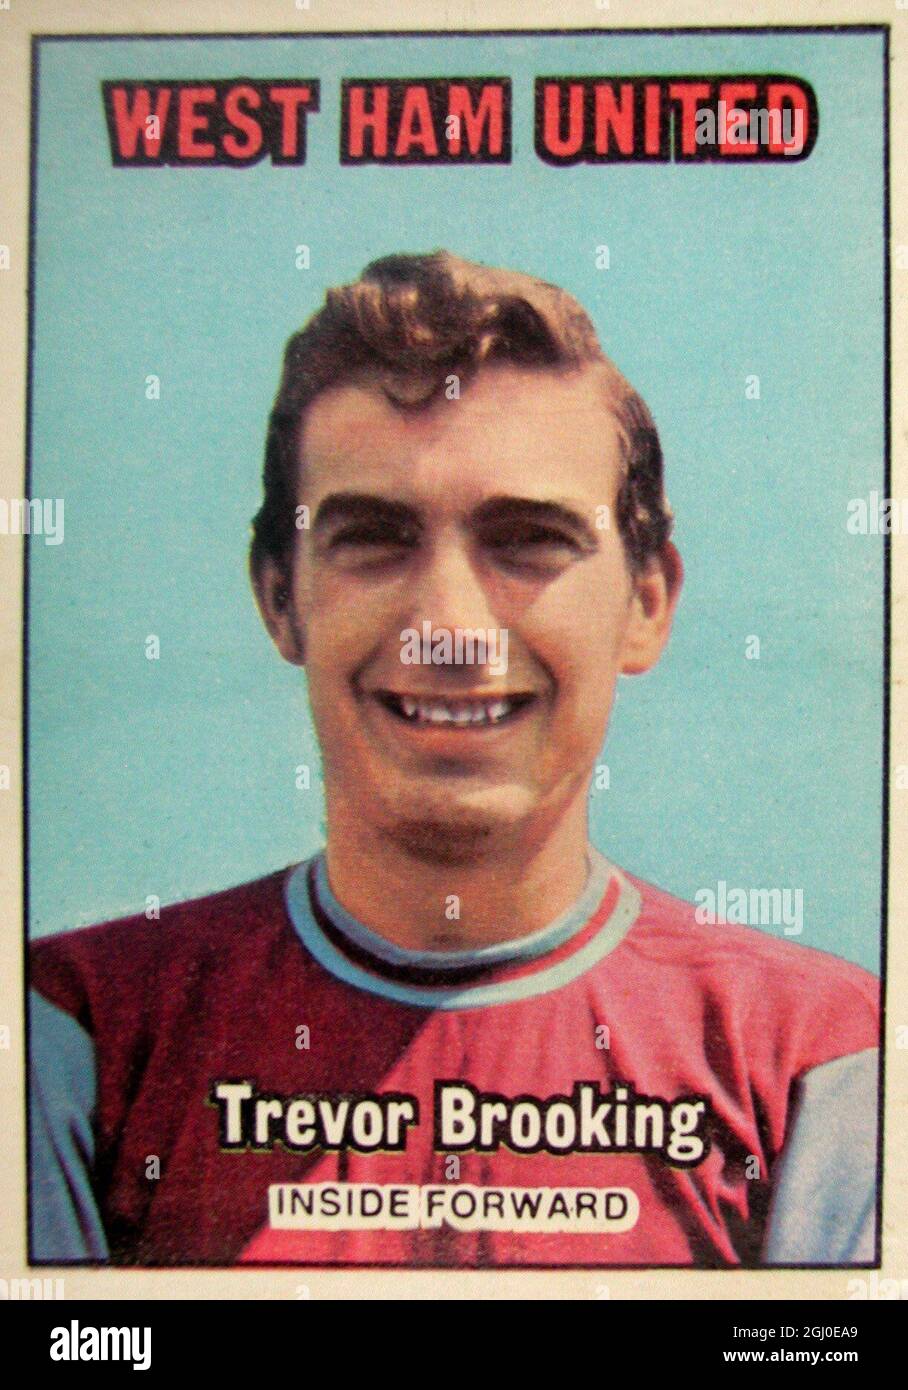 Trevor Brooking - West Ham United un elegante centro in avanti, Brooking è tornato a un ruolo di centrocampista con grande successo la scorsa stagione, dopo essere stato introdotto nella parte di West Ham come attaccante. Veloce, ha la capacità di battere diversi uomini, ed è un grande bene nella creazione di obiettivi per il resto della linea diretta. Foto Stock